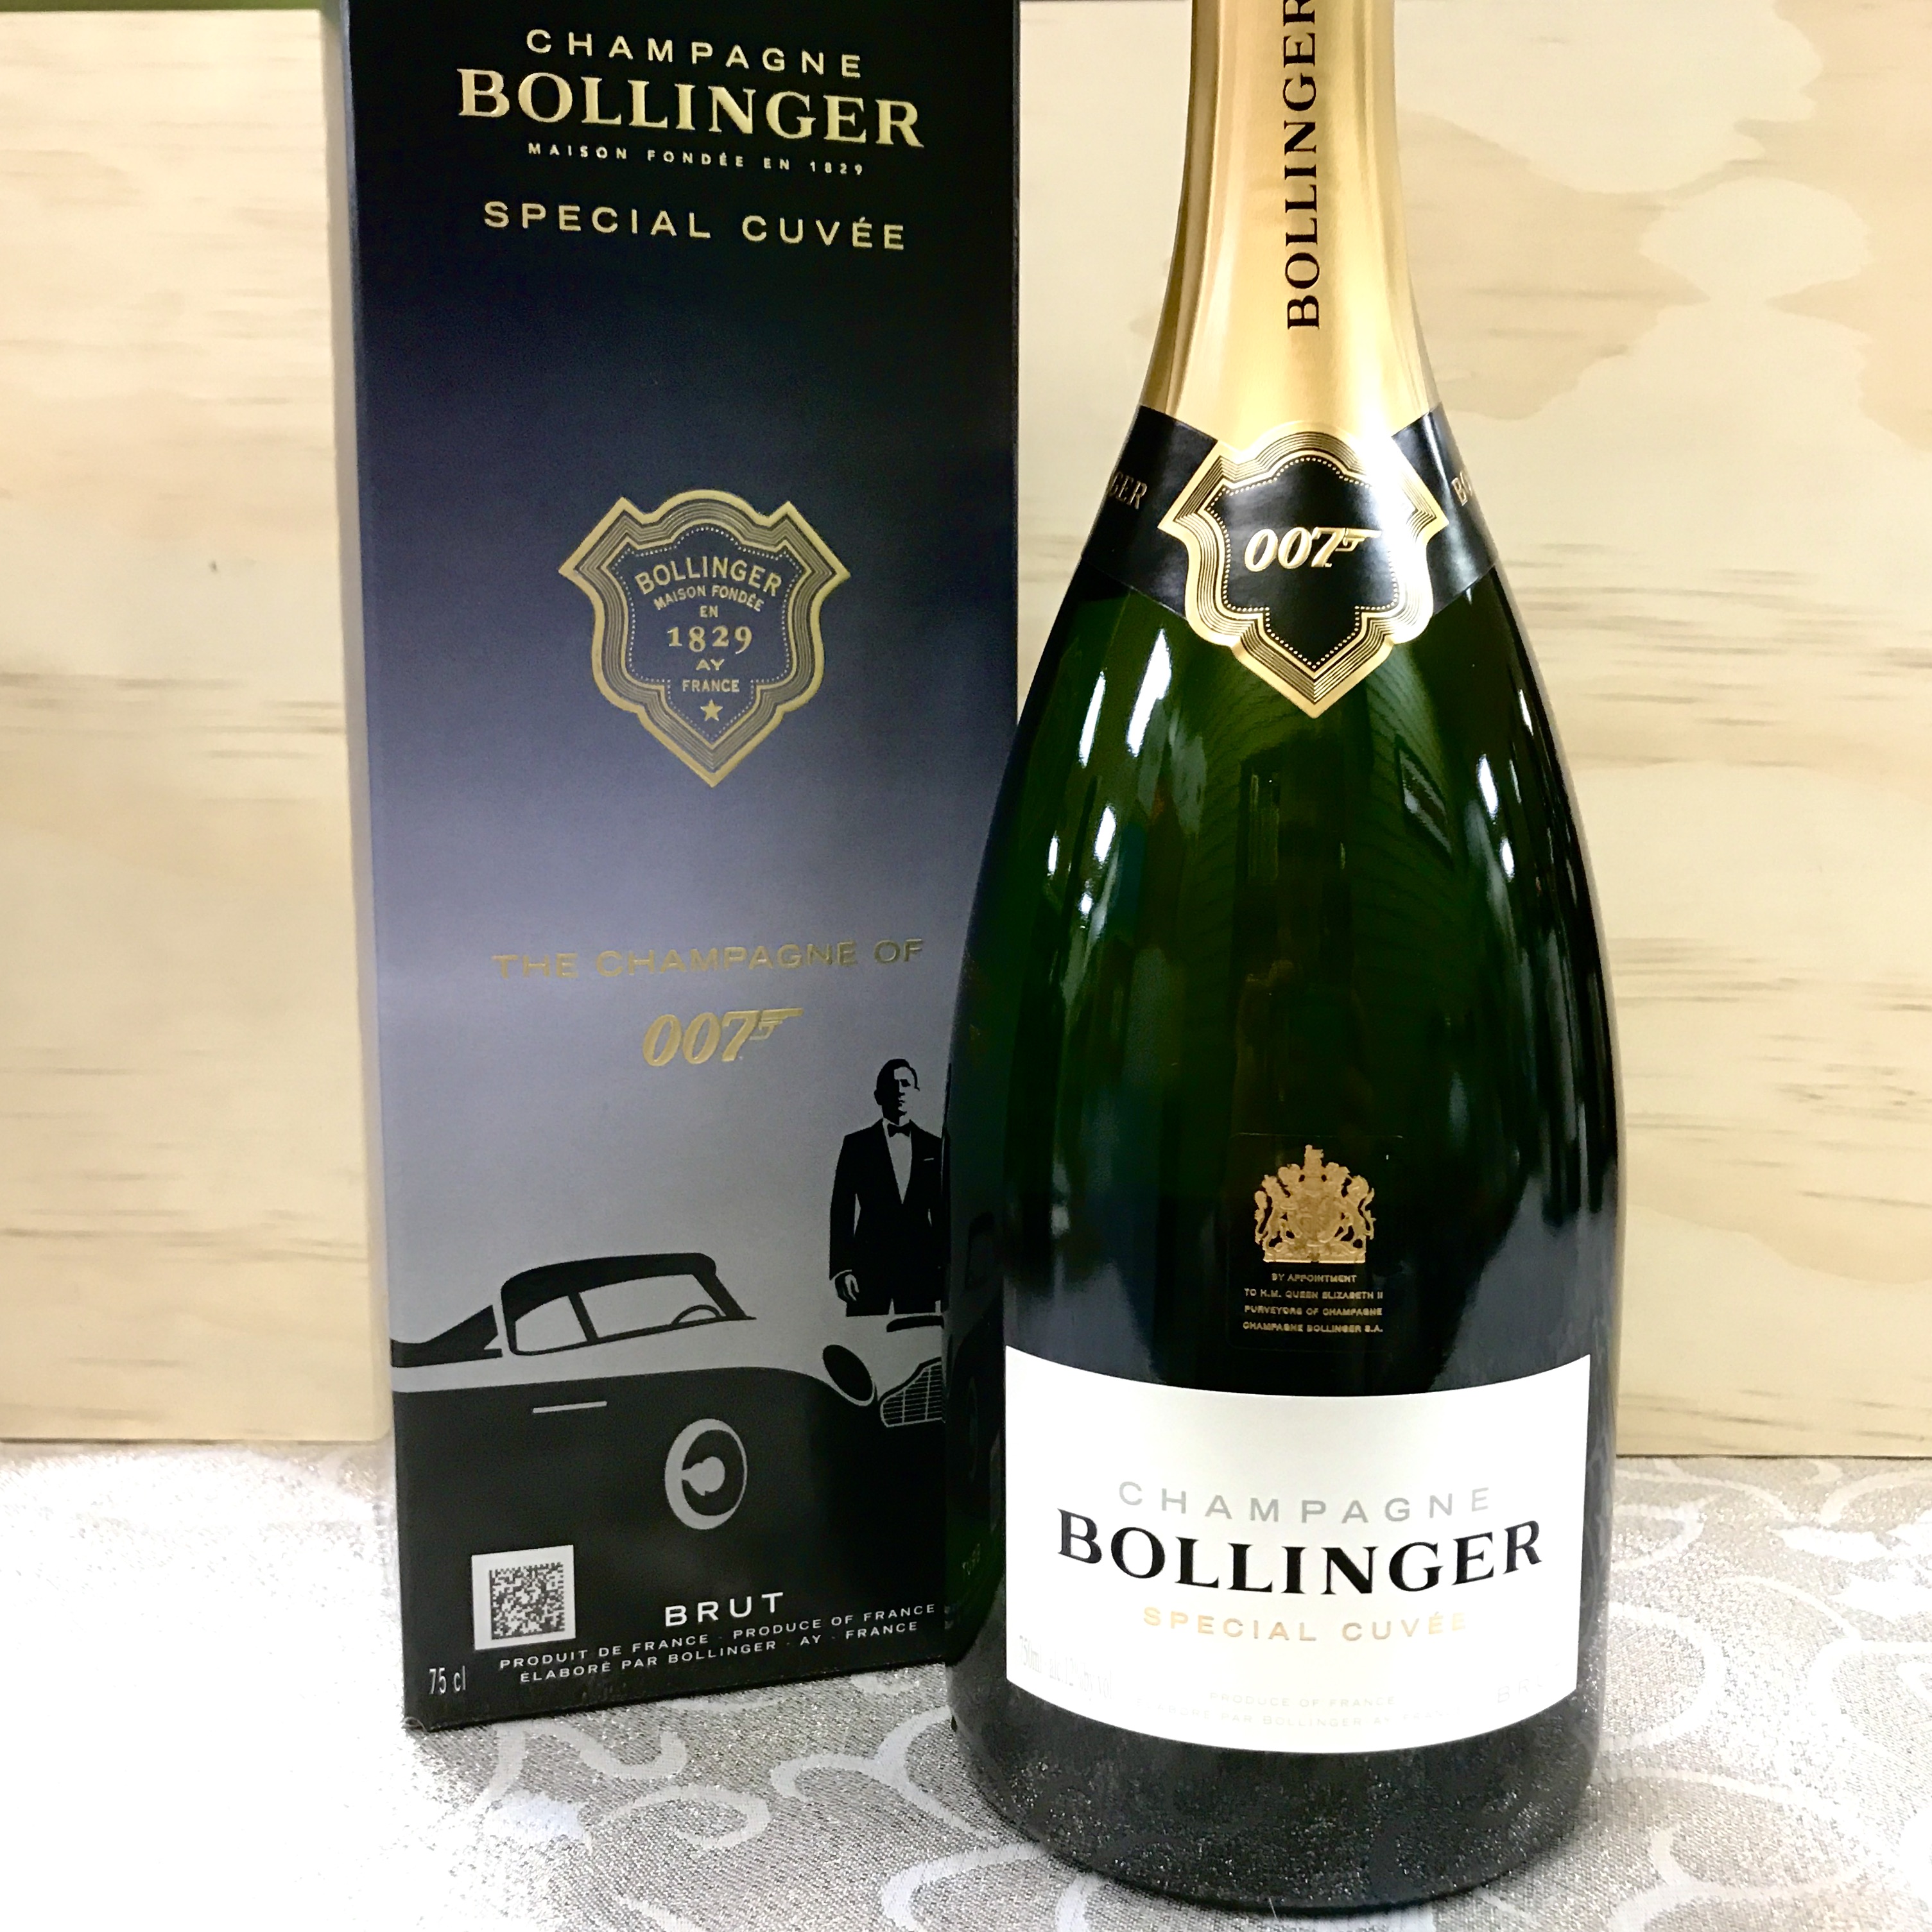 Bollinger Champagne Special Cuvee '007' Brut NV